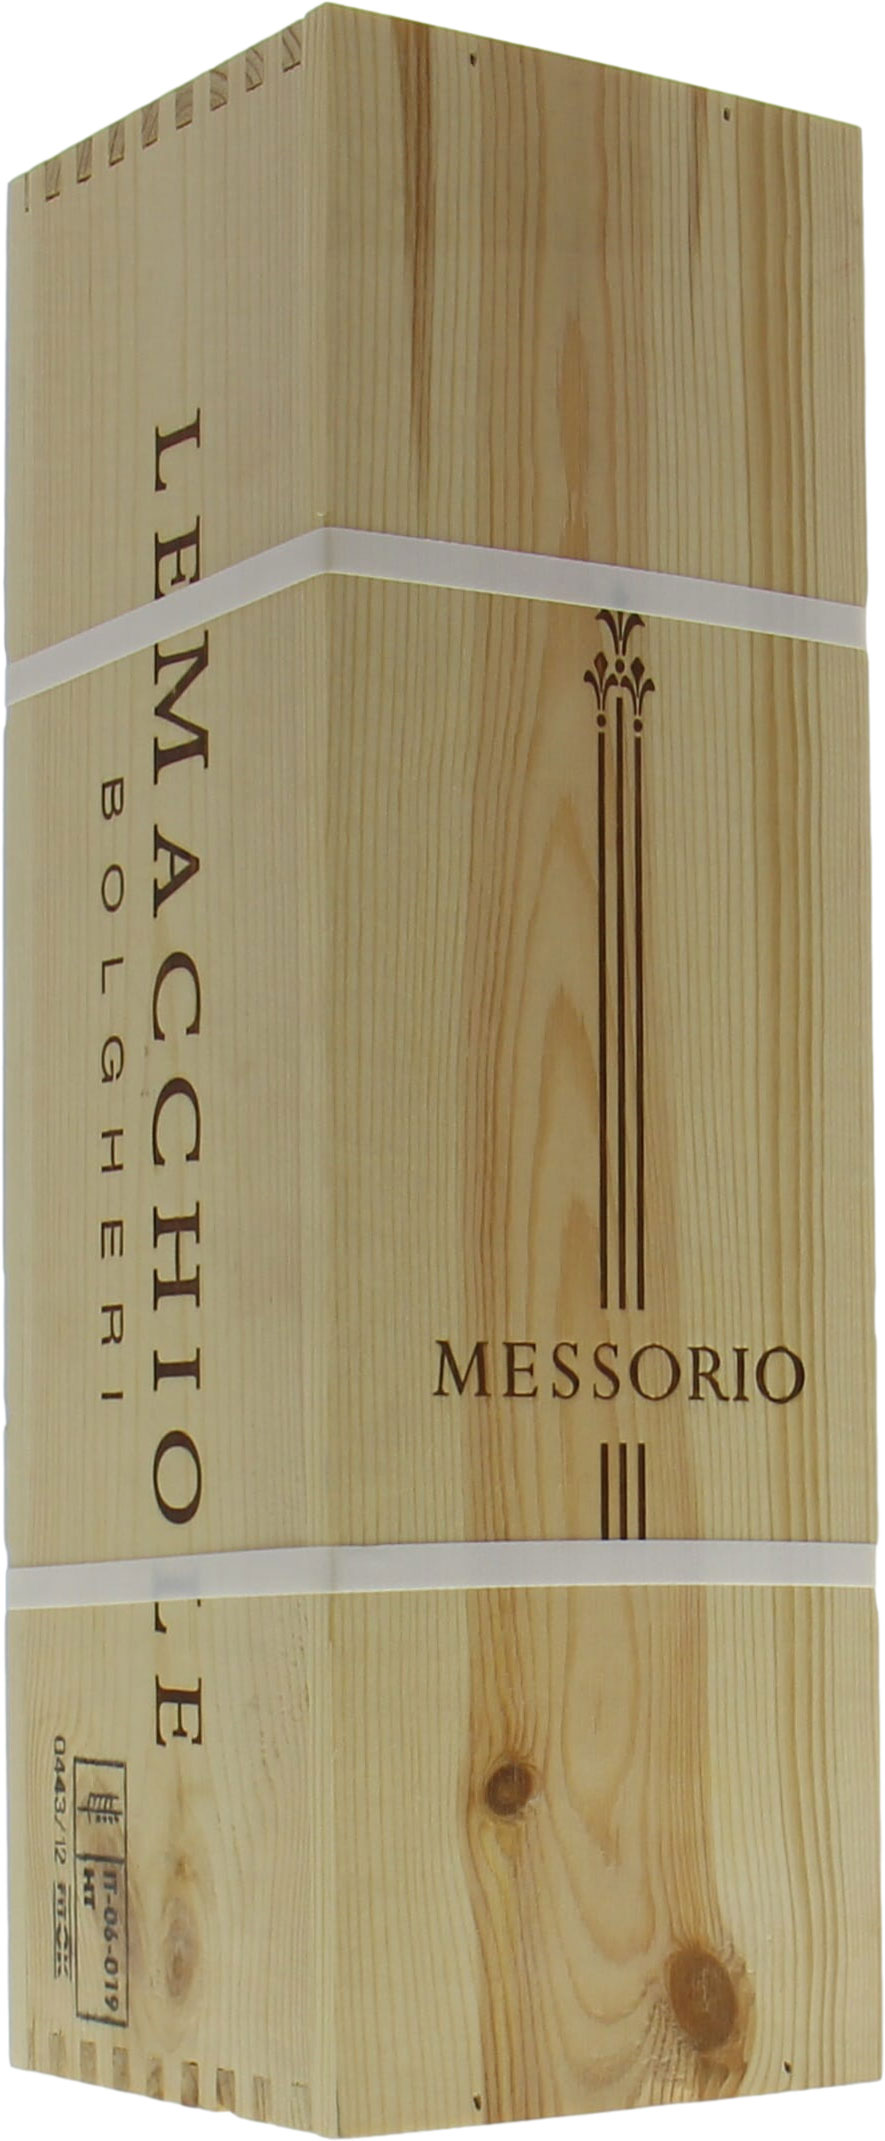 Le Macchiole - Messorio 2013 Perfect